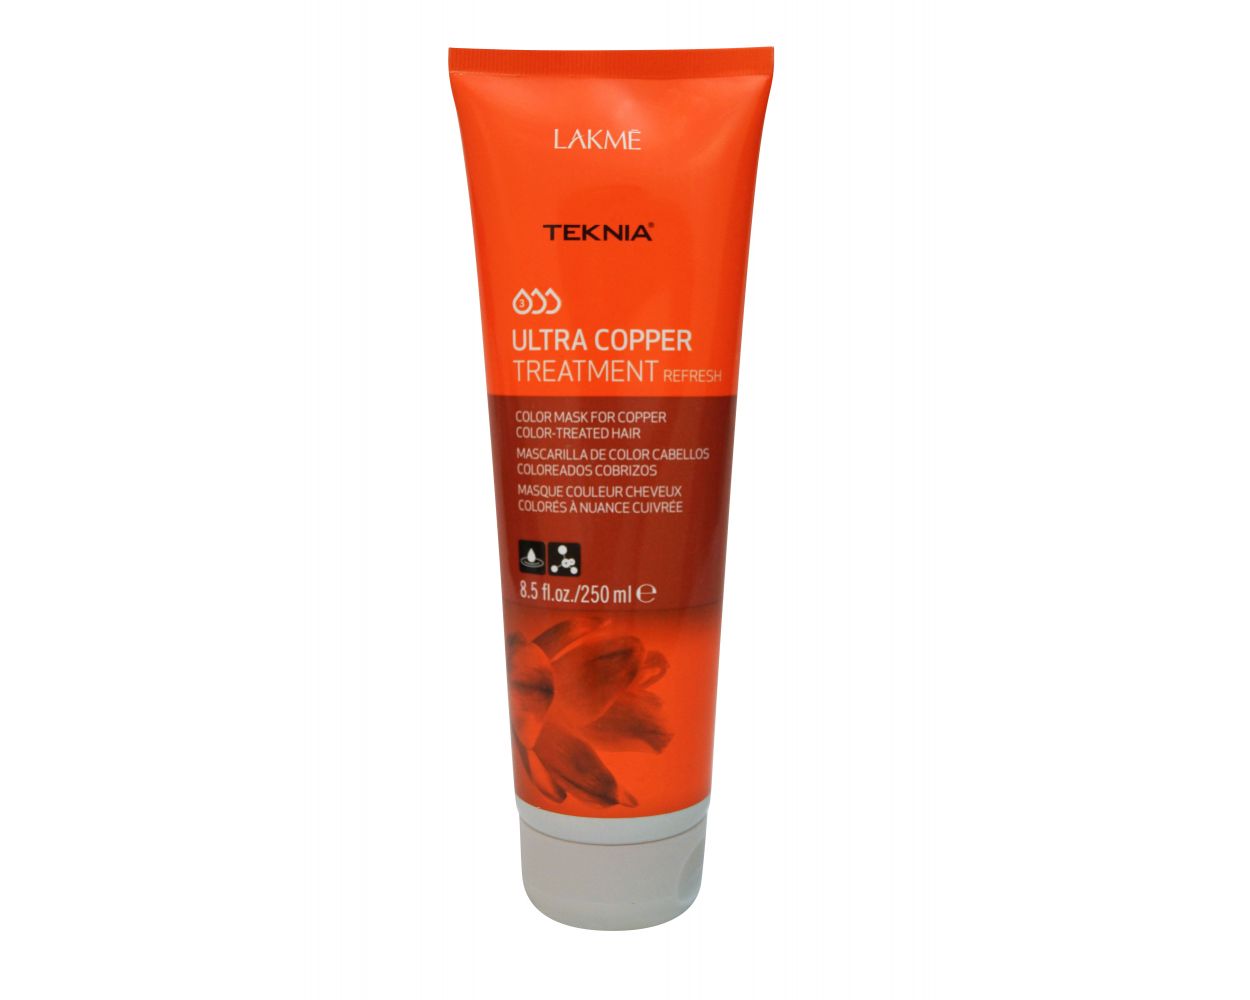 Lakme Teknia Ultra Copper Treatment | - Beautyvice.com